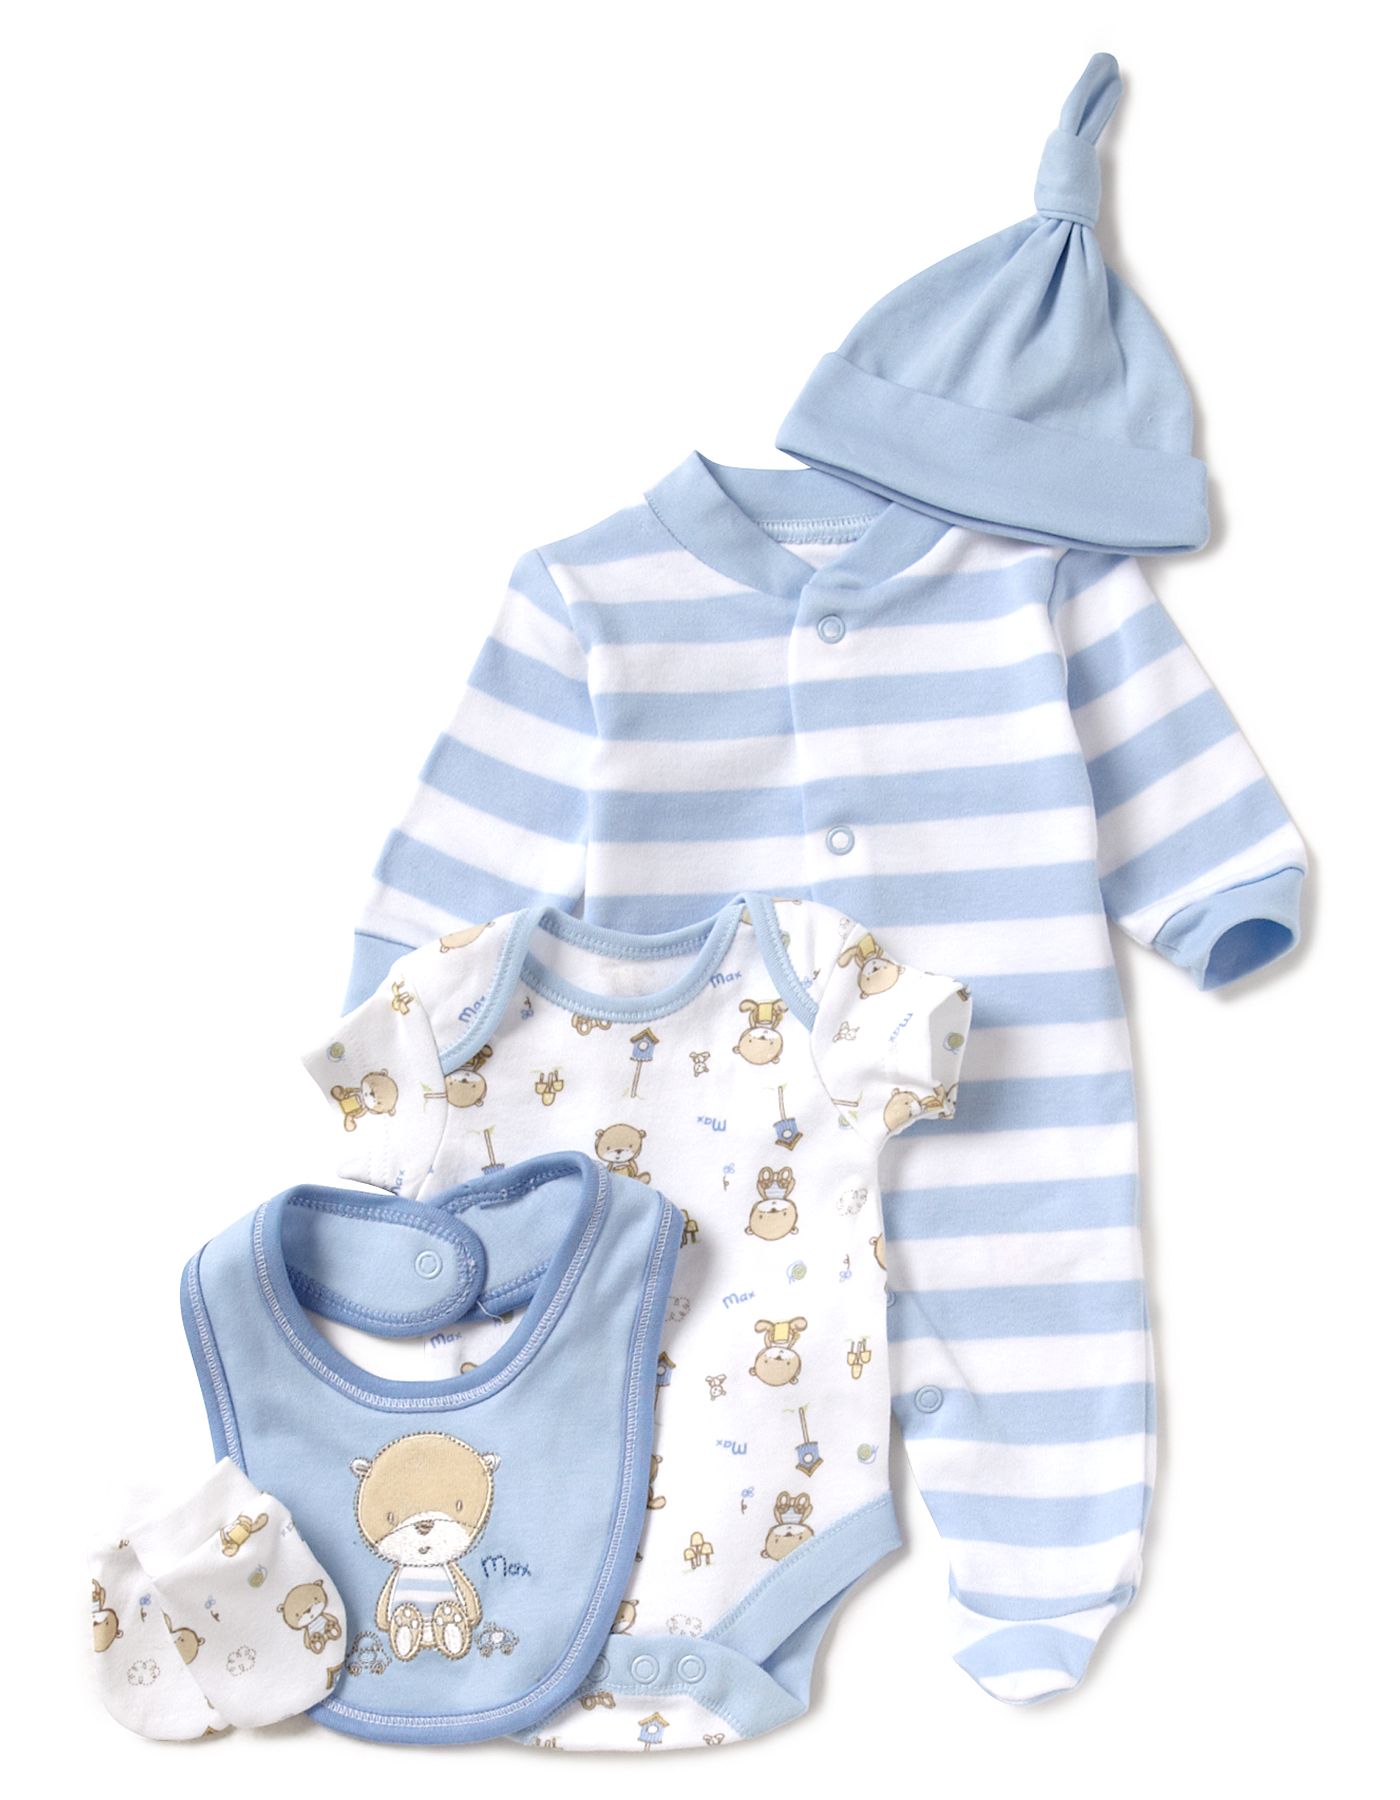 Выбор одежды для новорожденных детей